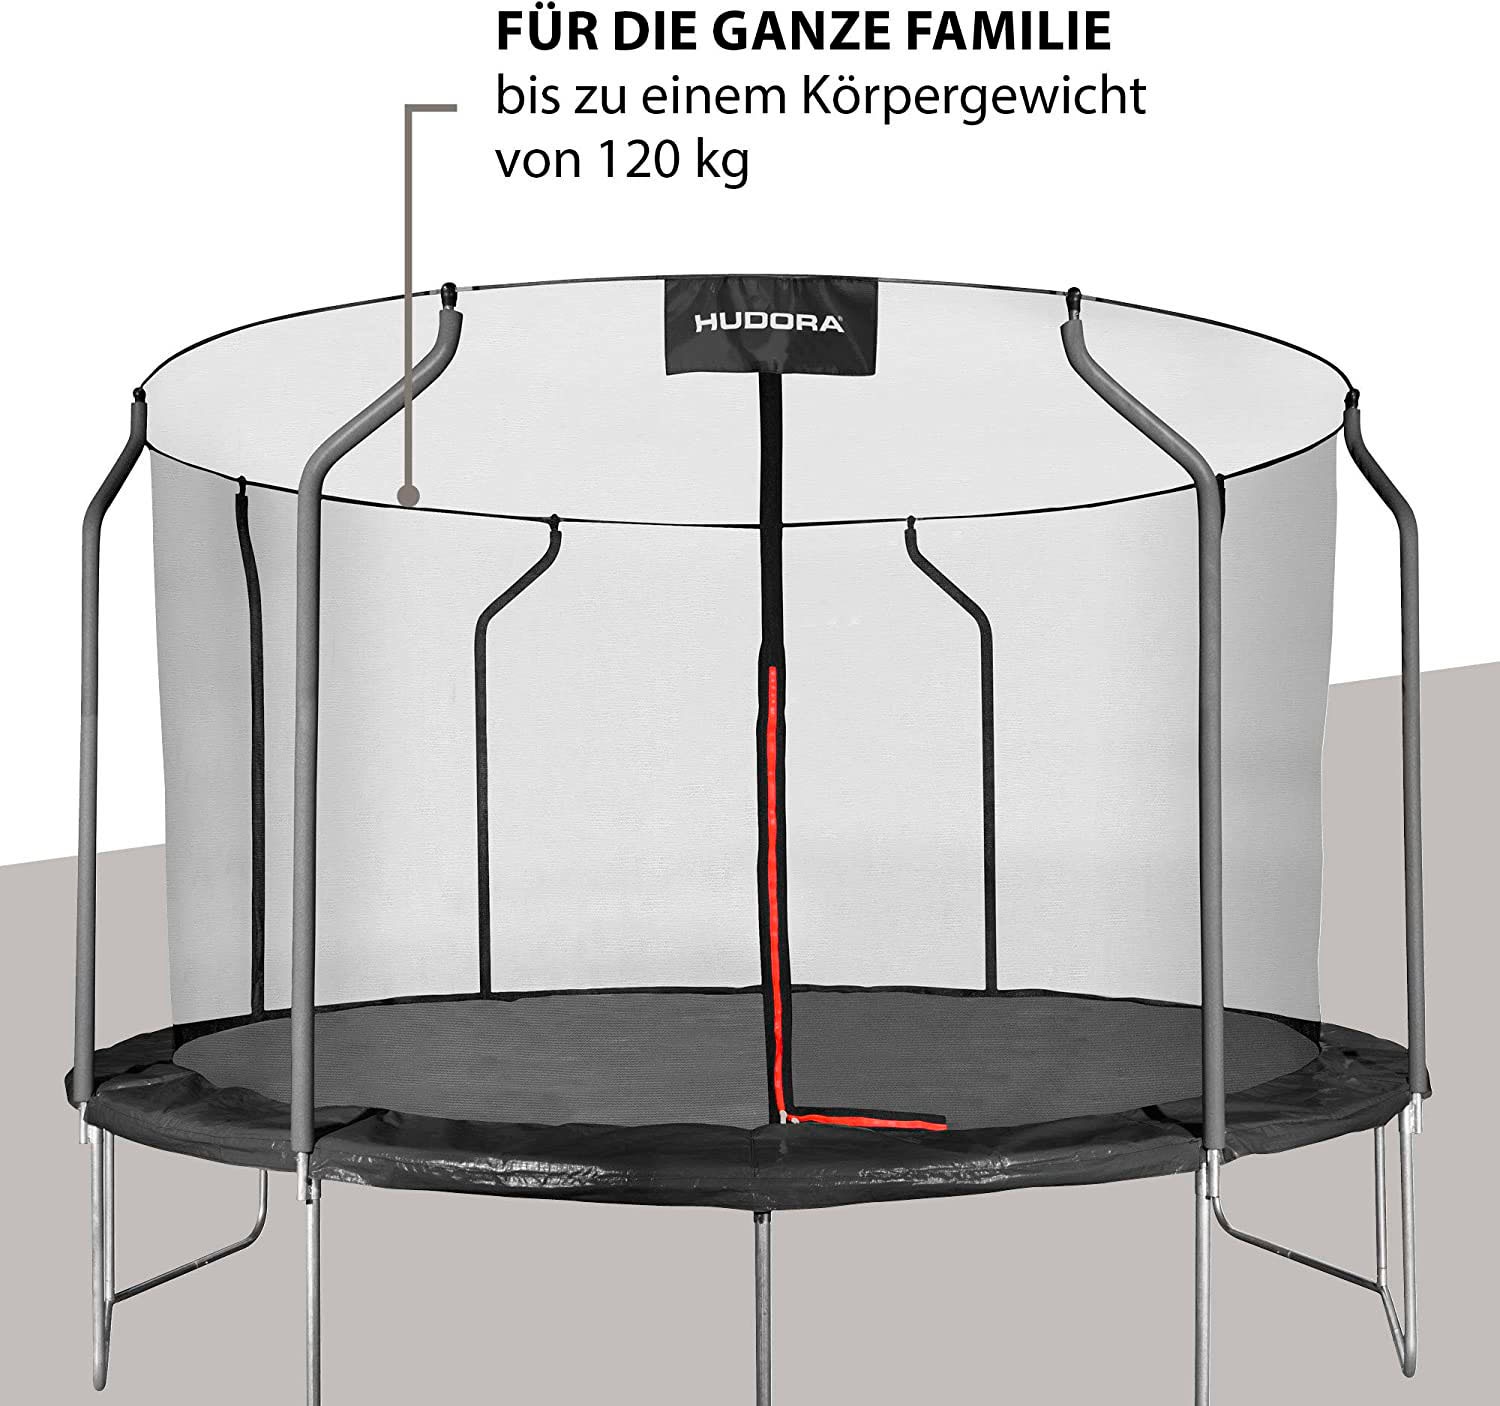 Hudora Gartentrampolin »First«, Ø 400 cm, 400 cm Durchmesser, inklusive Sicherheitsnetz